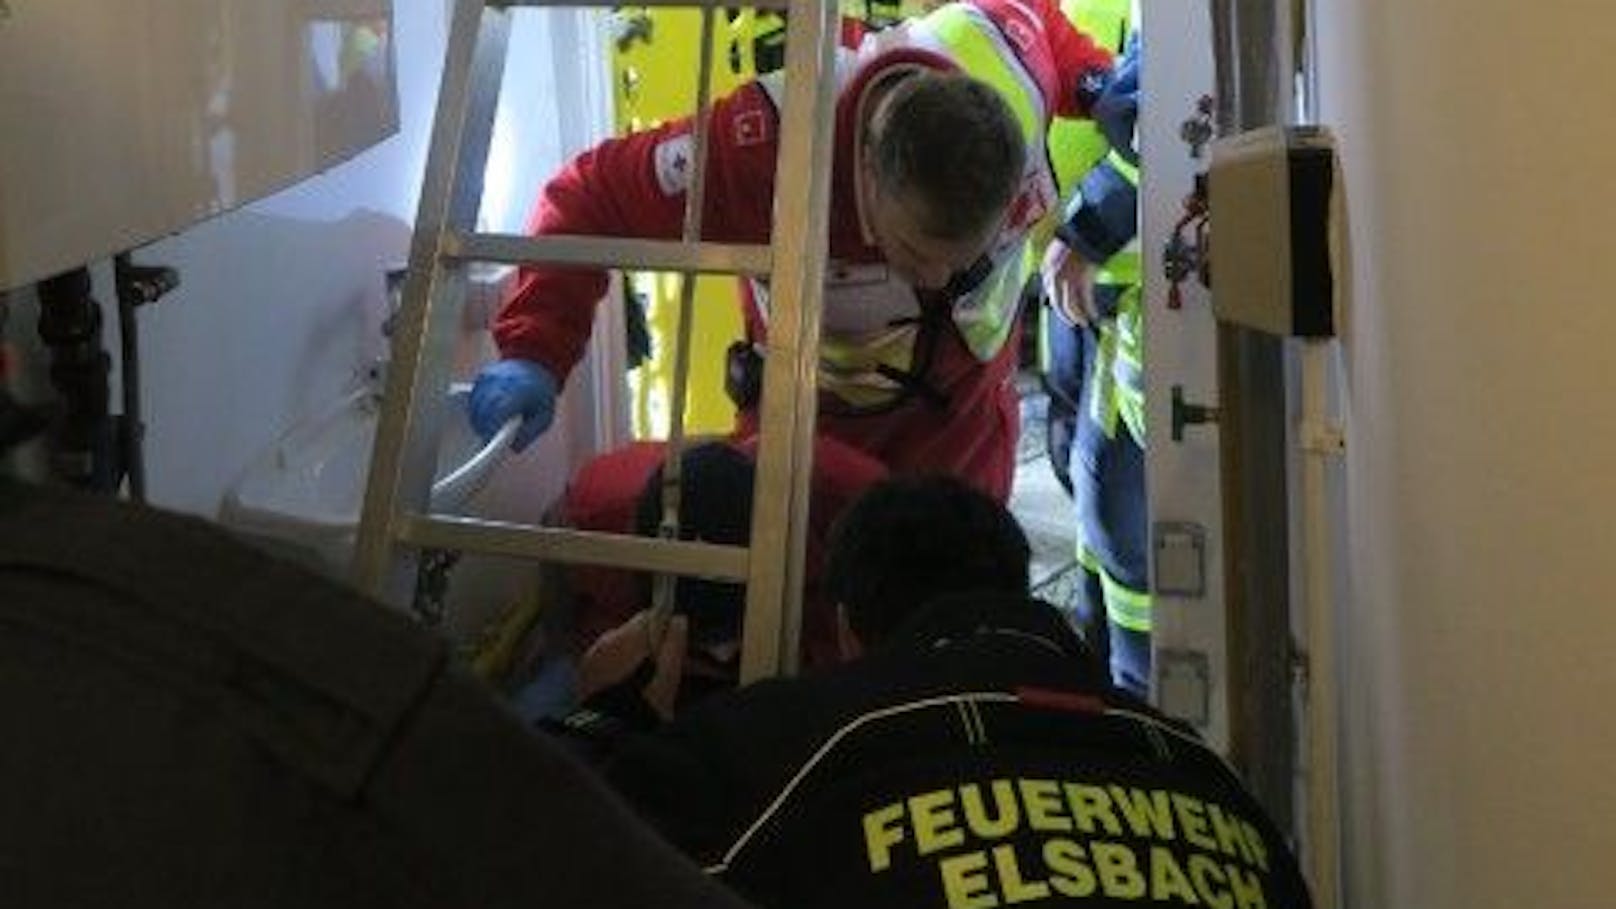 Während eine Feuerwehrfrau zur Verletzten in den Schacht abstieg, bereiteten die anderen Florianis alles für eine schonende Rettung vor.